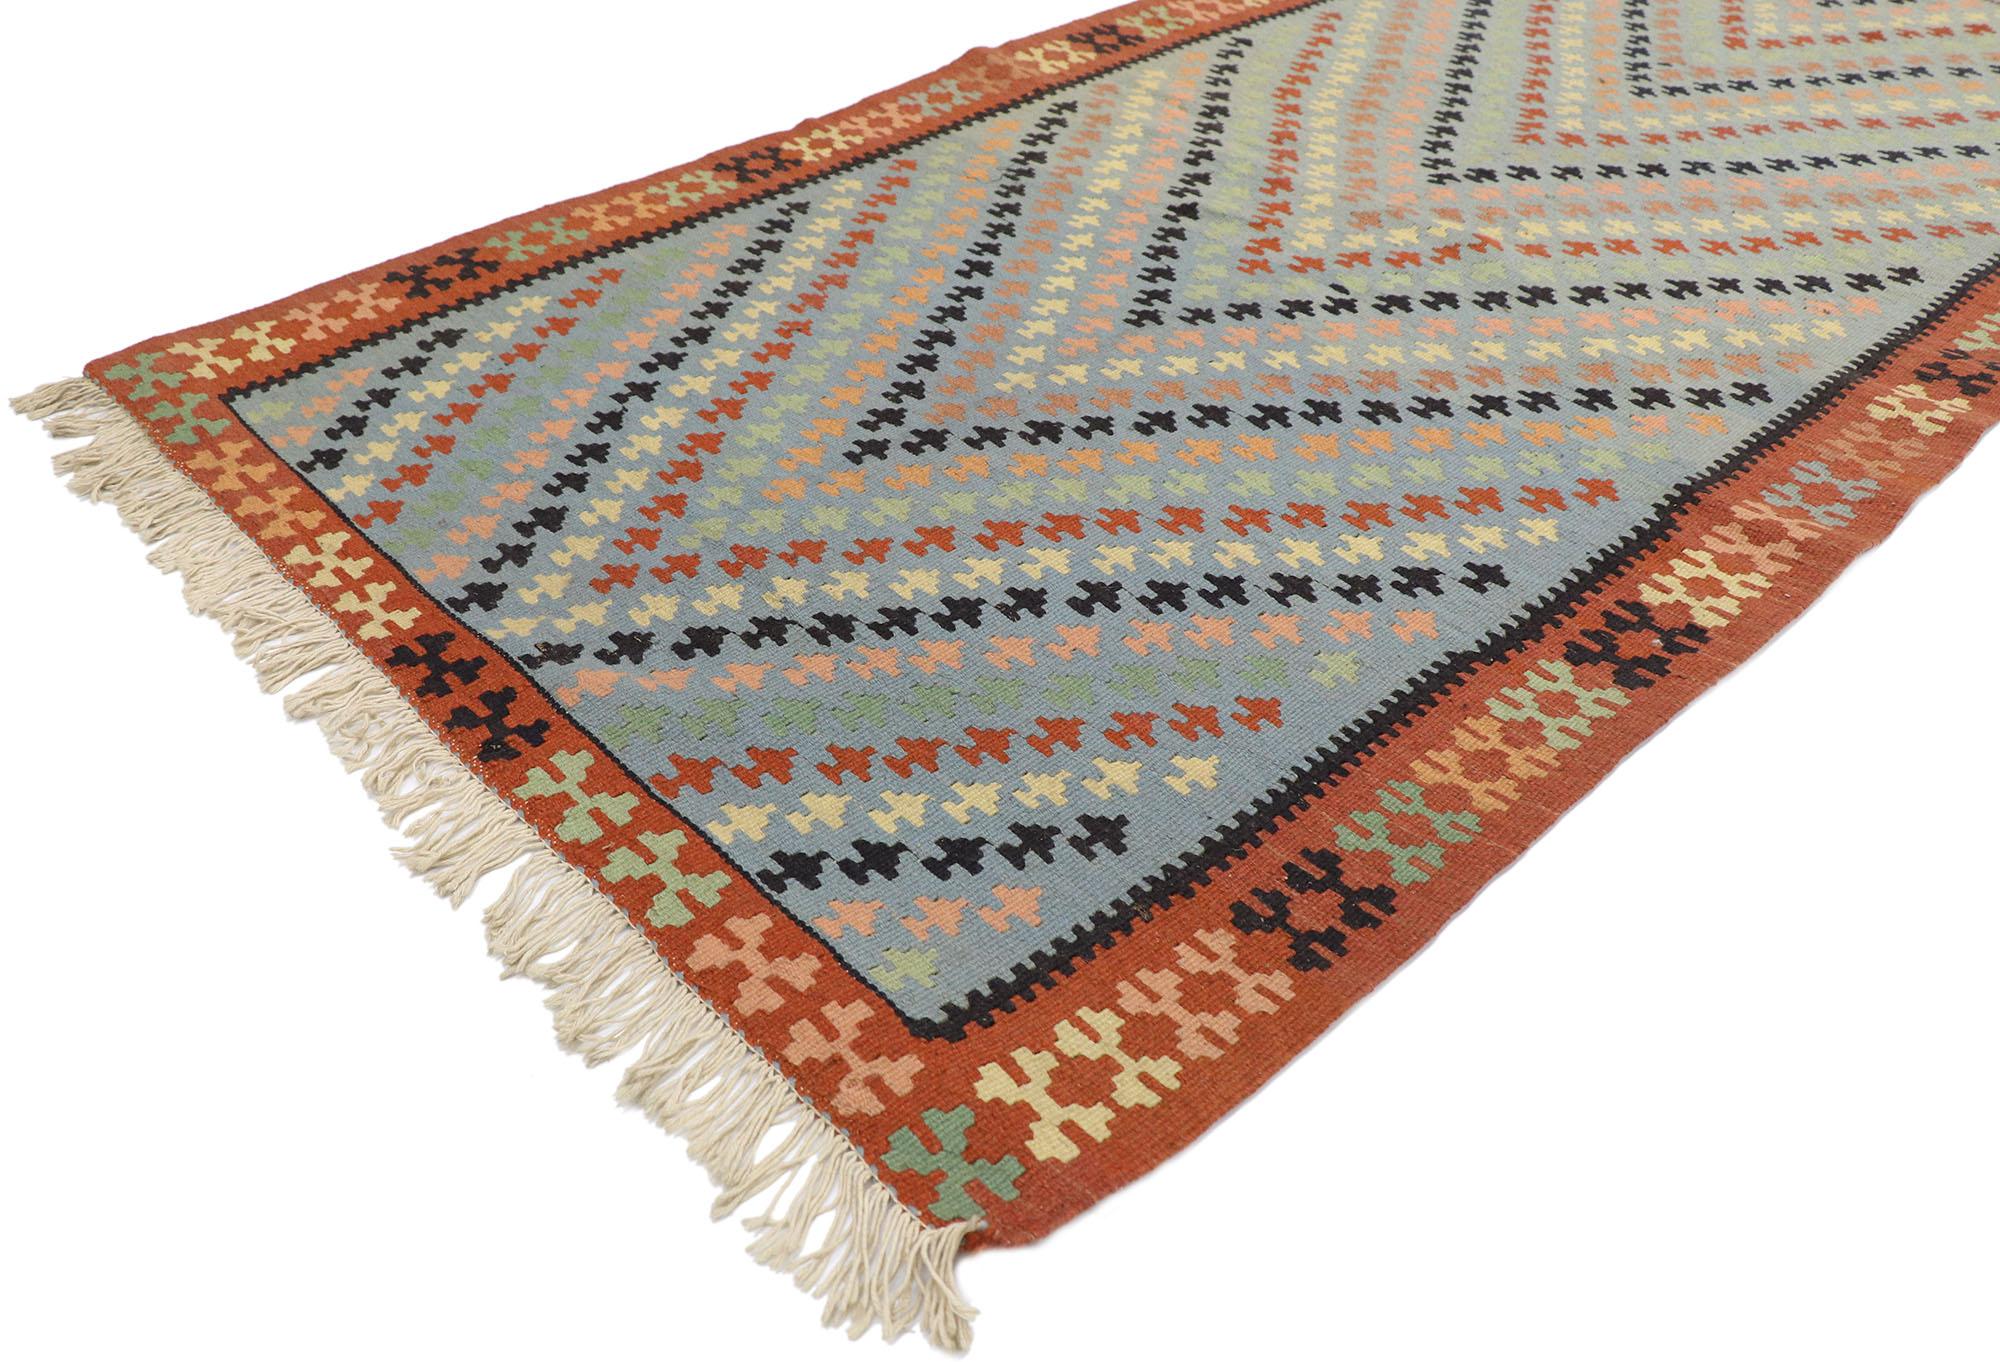 77808 vintage Persian Shiraz Kilim rug with Boho Chic Tribal style 03'05 x 06'07. Ce tapis kilim persan vintage en laine, tissé à la main, présente un motif sur toute la surface, composé de rangées de motifs géométriques multicolores. Chaque rangée